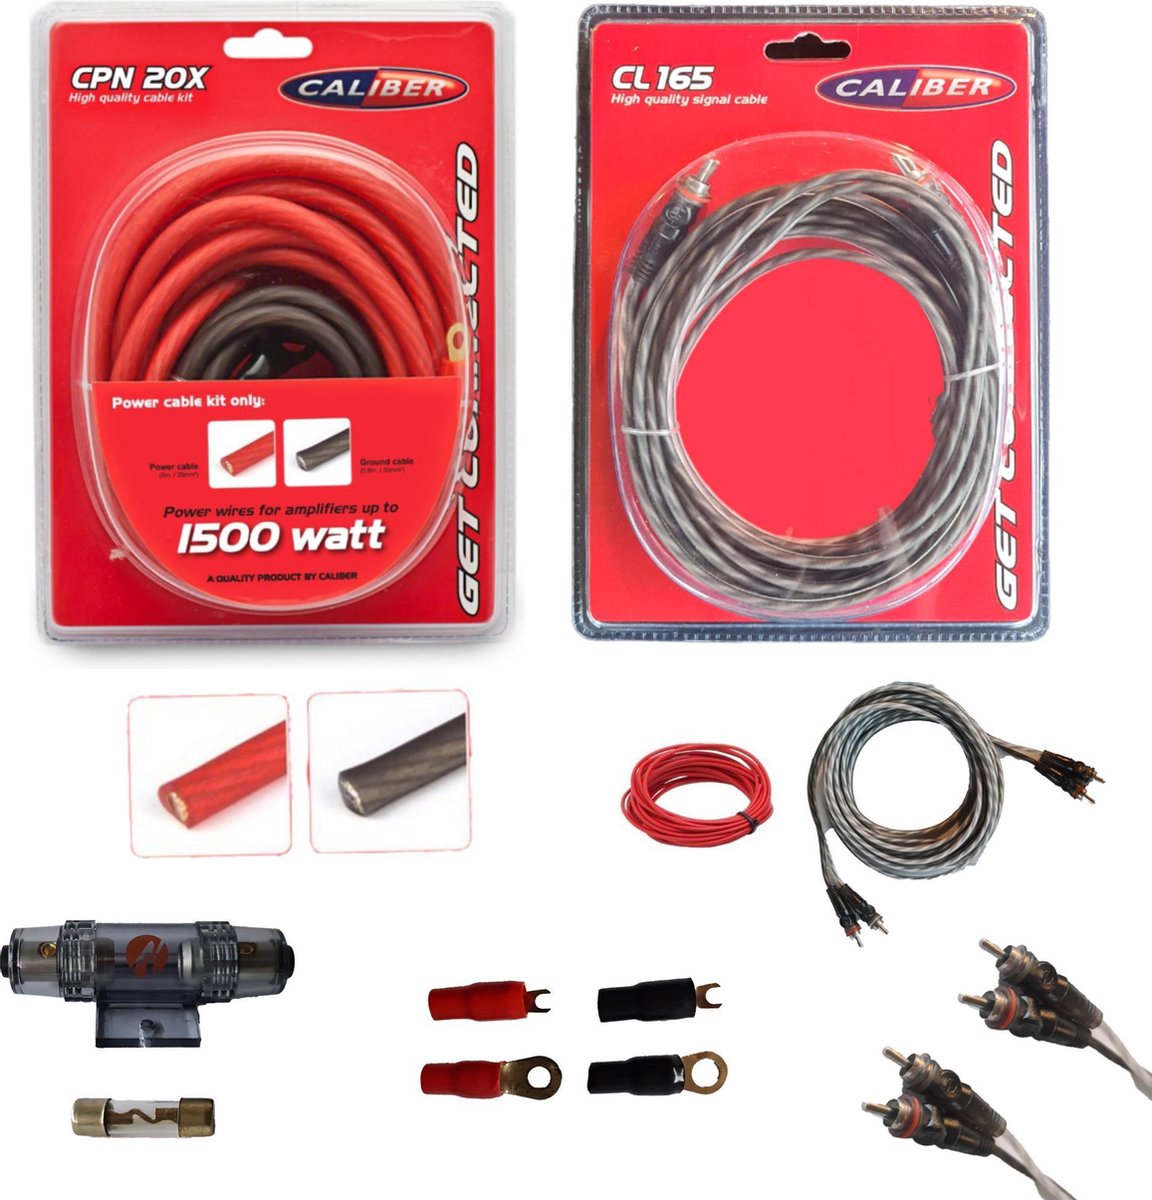 Audio Kabelset voor Auto Versterker - Kabel voor 1500 Watt Subwoofer - Set  van 4 Kabels - 5 Meter (CPK20D)